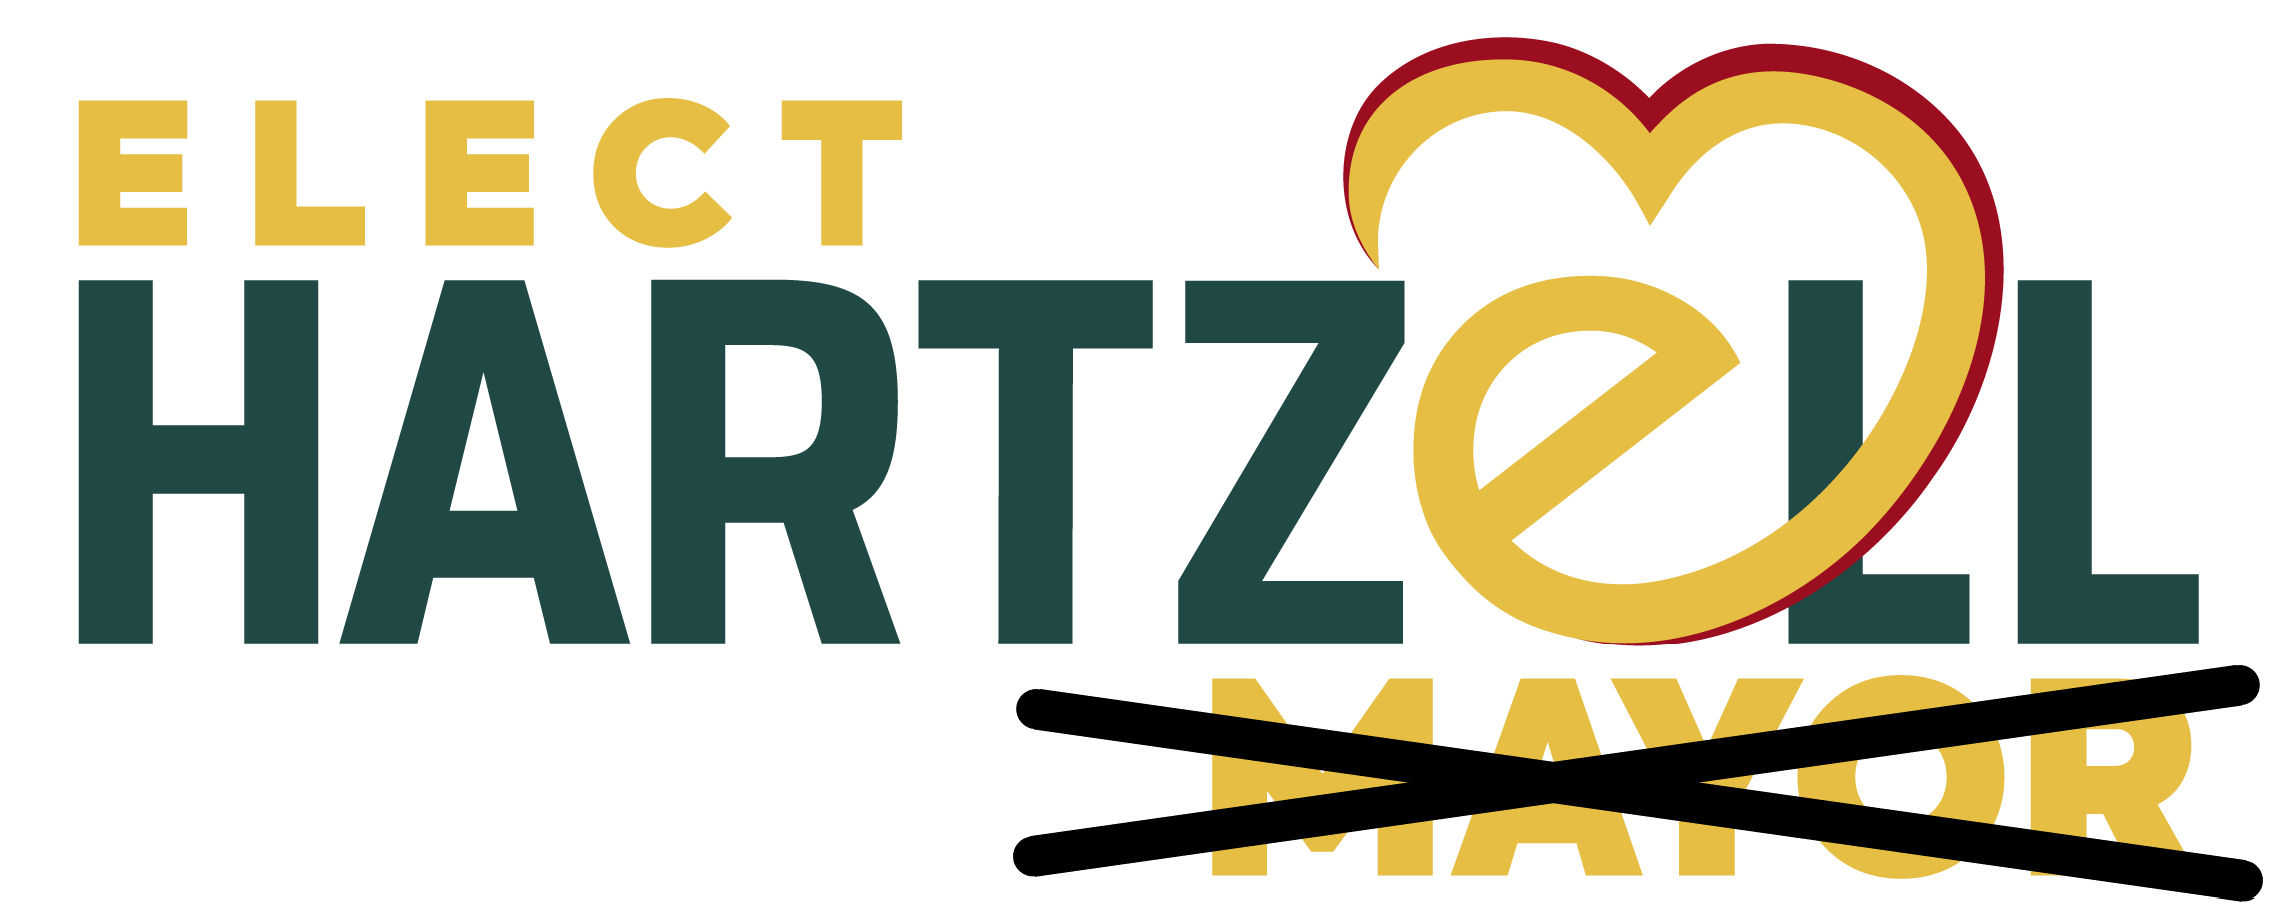 Hartzell For Council